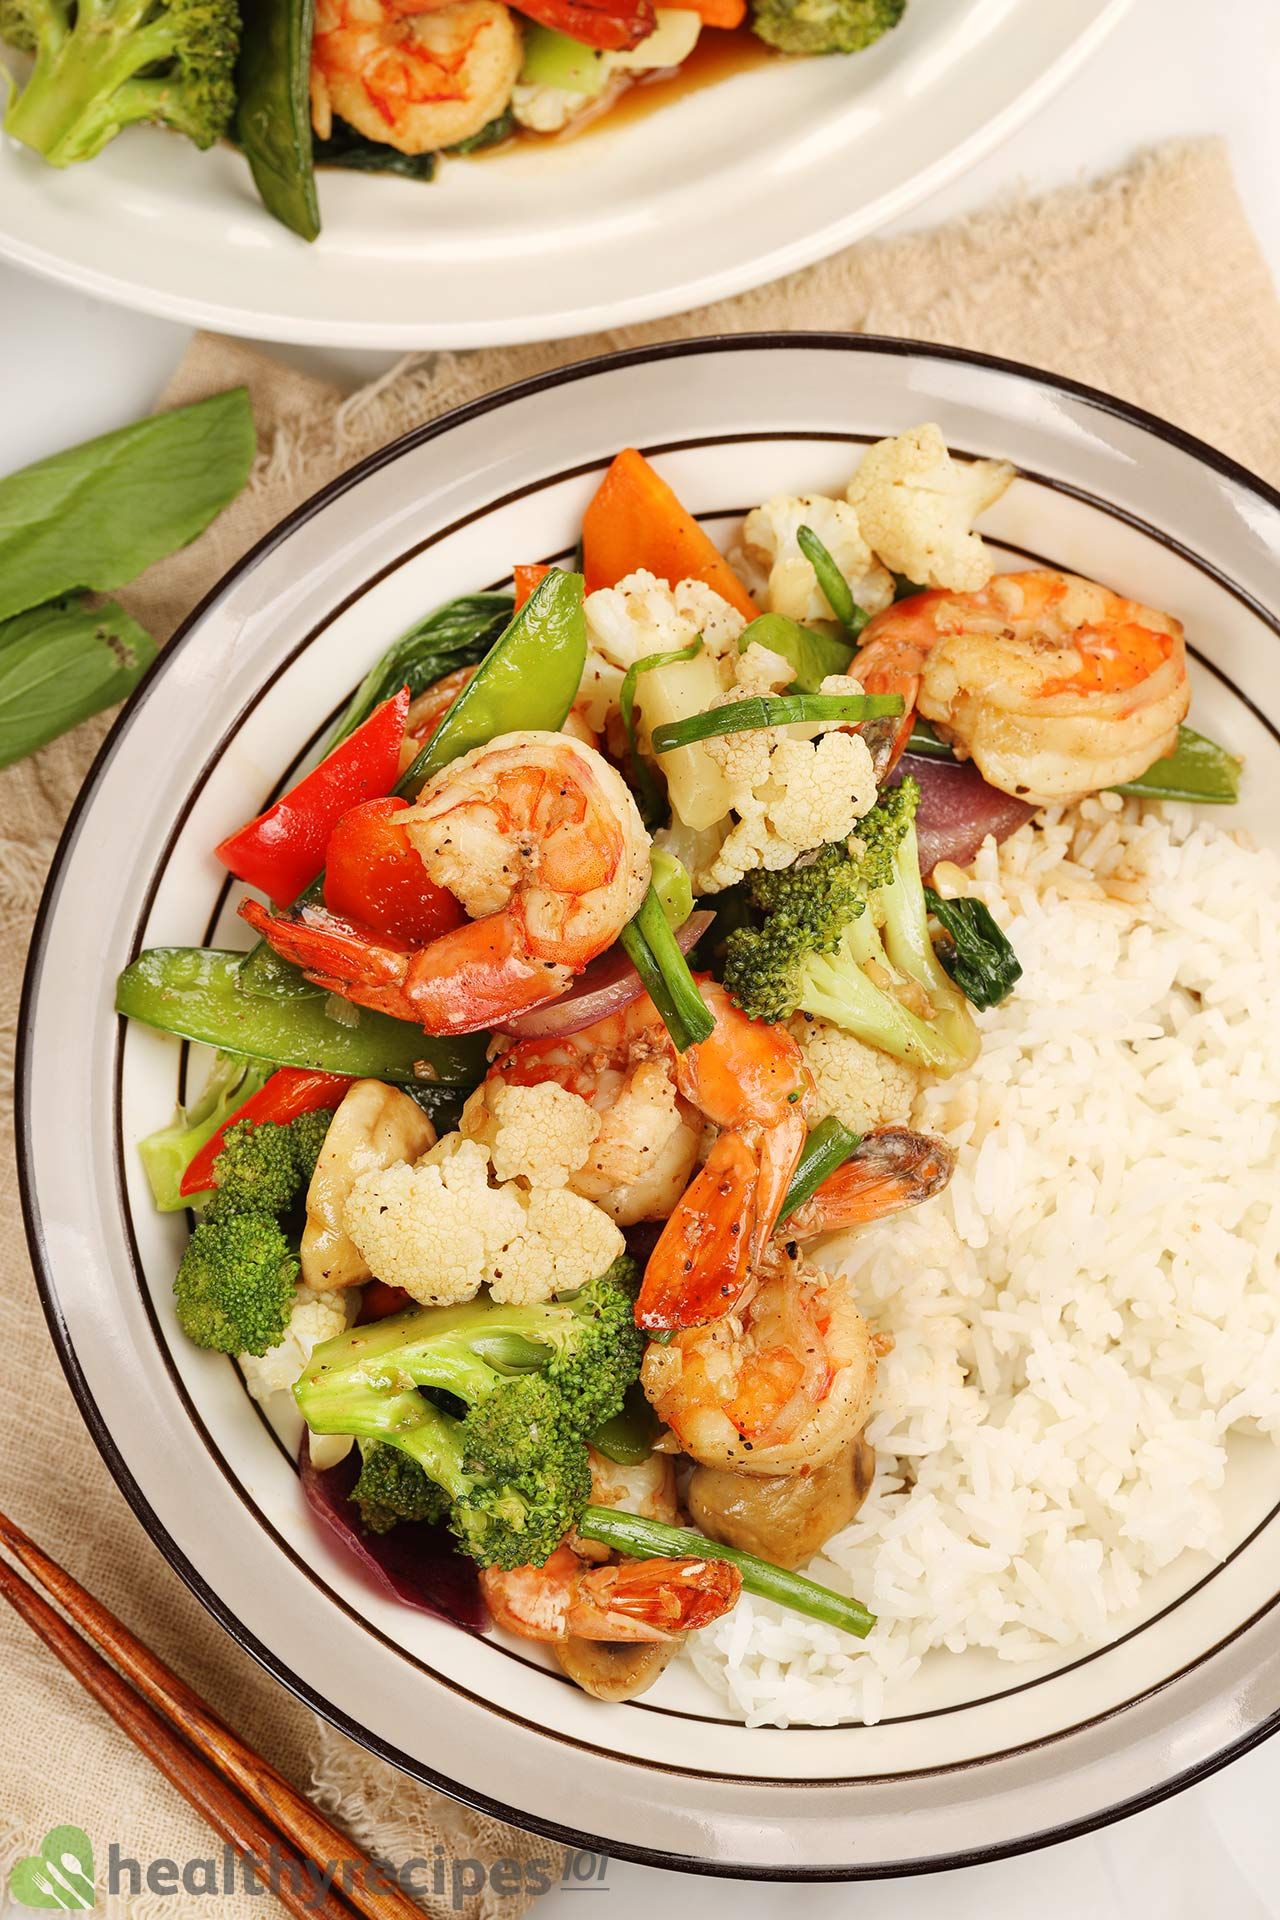 Is This Shrimp Chop Suey Recipe Healthy